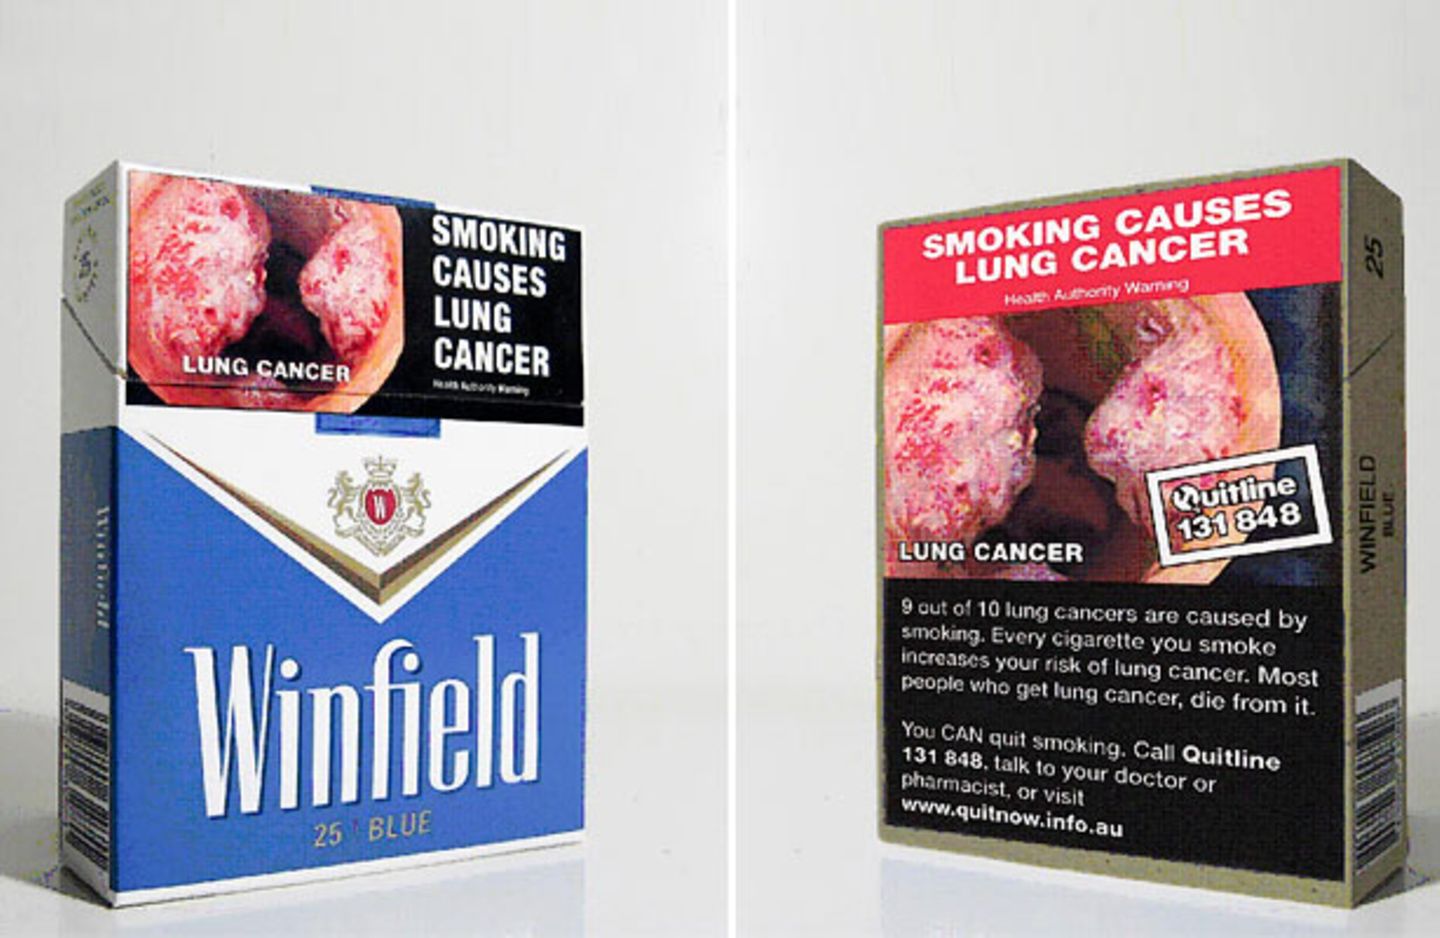 Zigarettenpackungen mit Warnhinweisen aus Australien